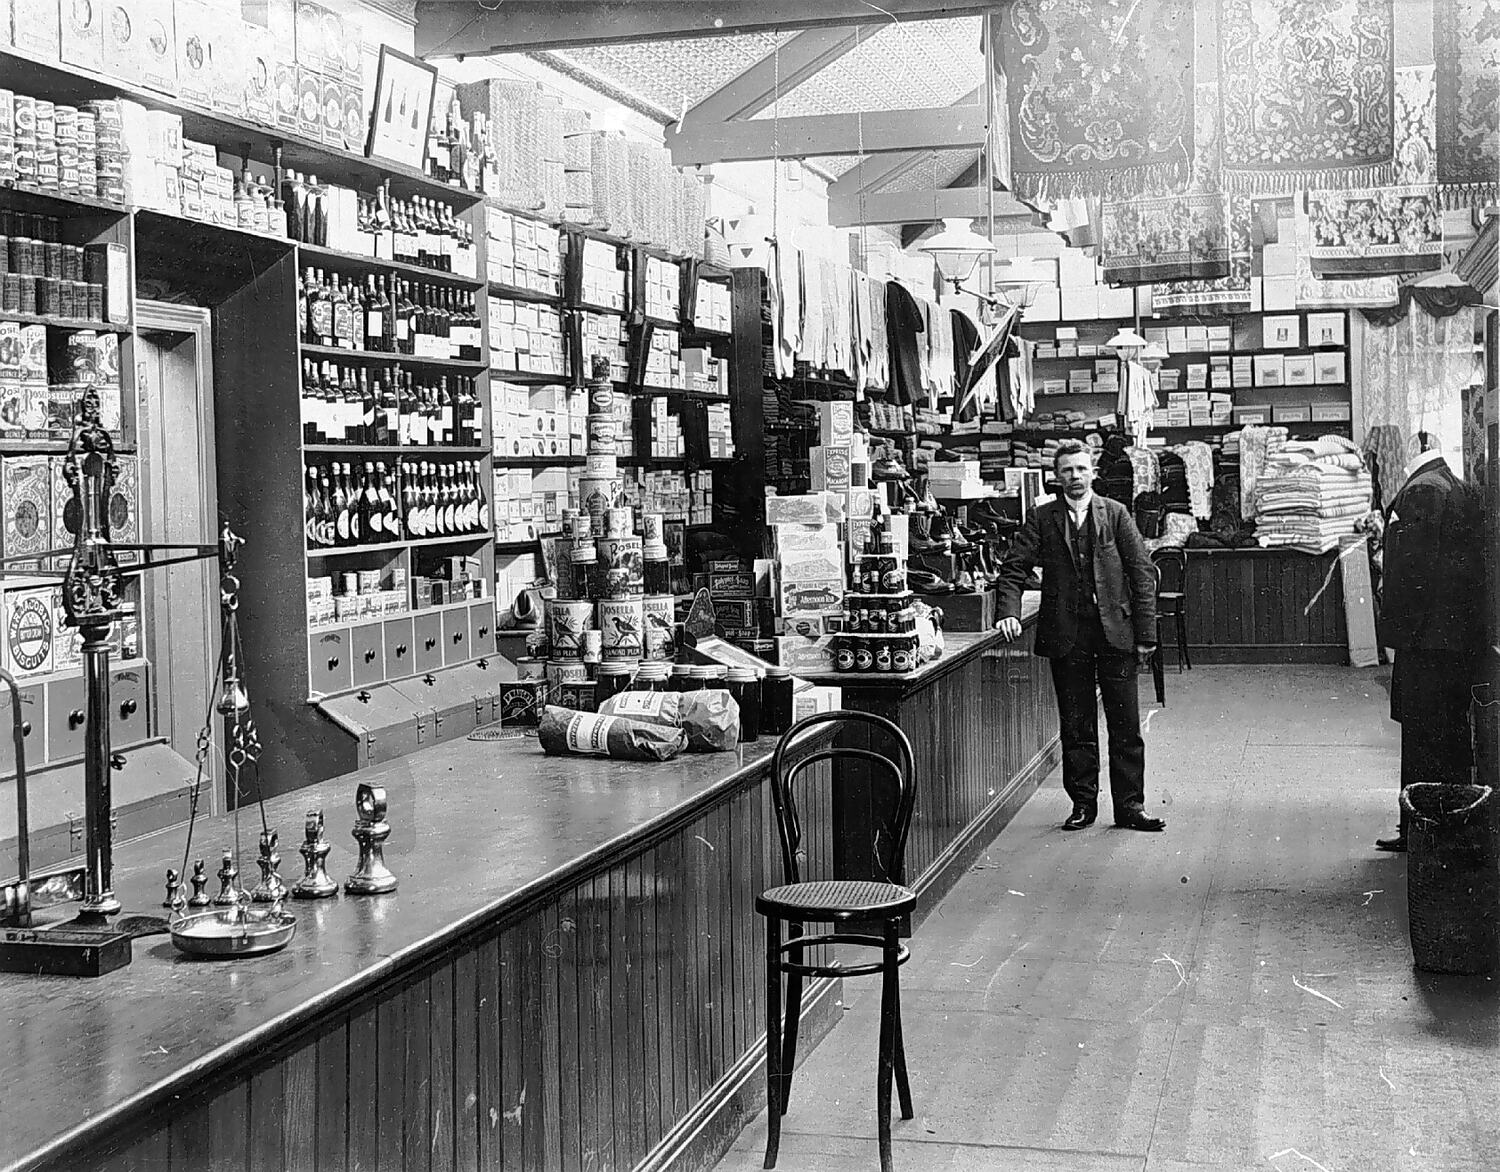 Negative - J.W. Trangmar General Store, Coleraine, Victoria, 1906